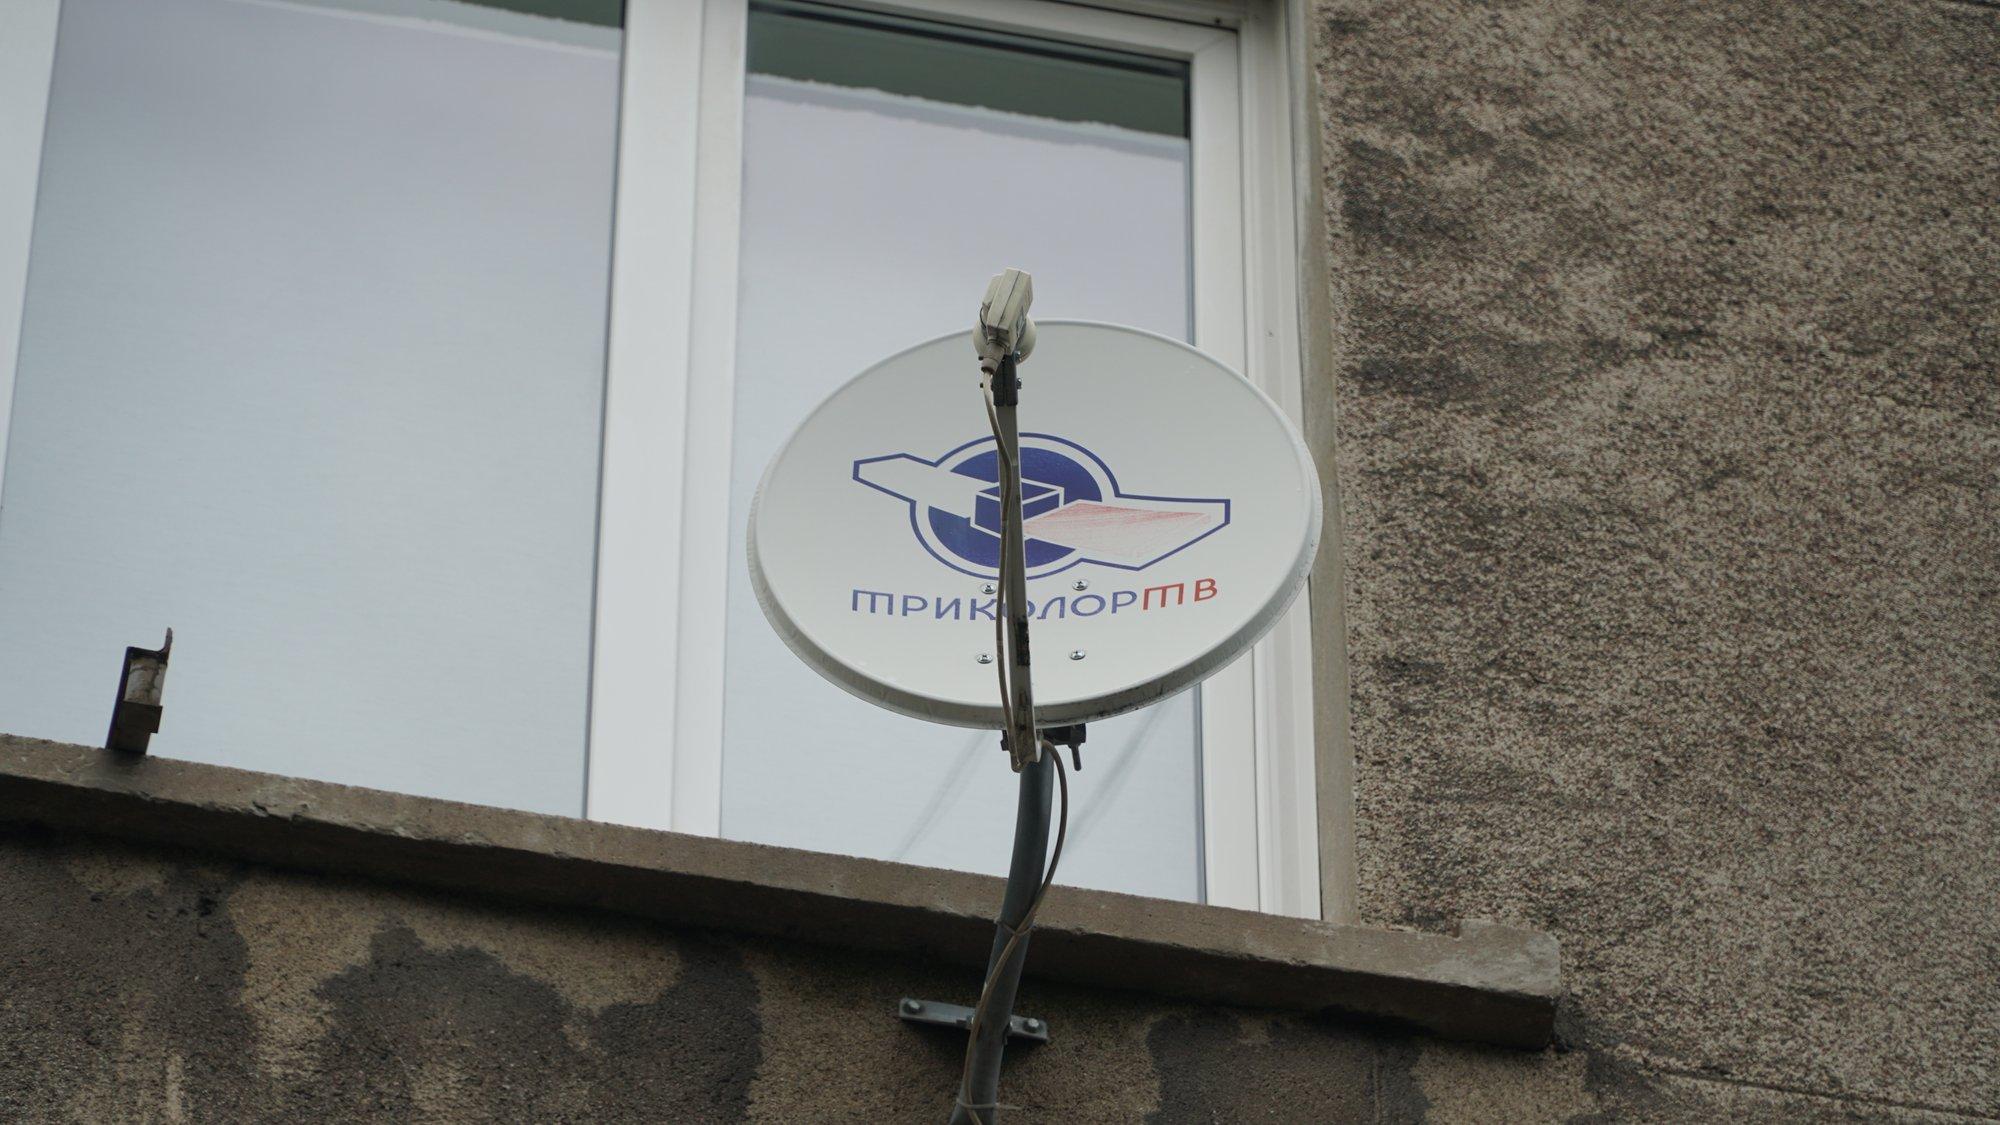 Спутниковая антенна на доме в Нарве